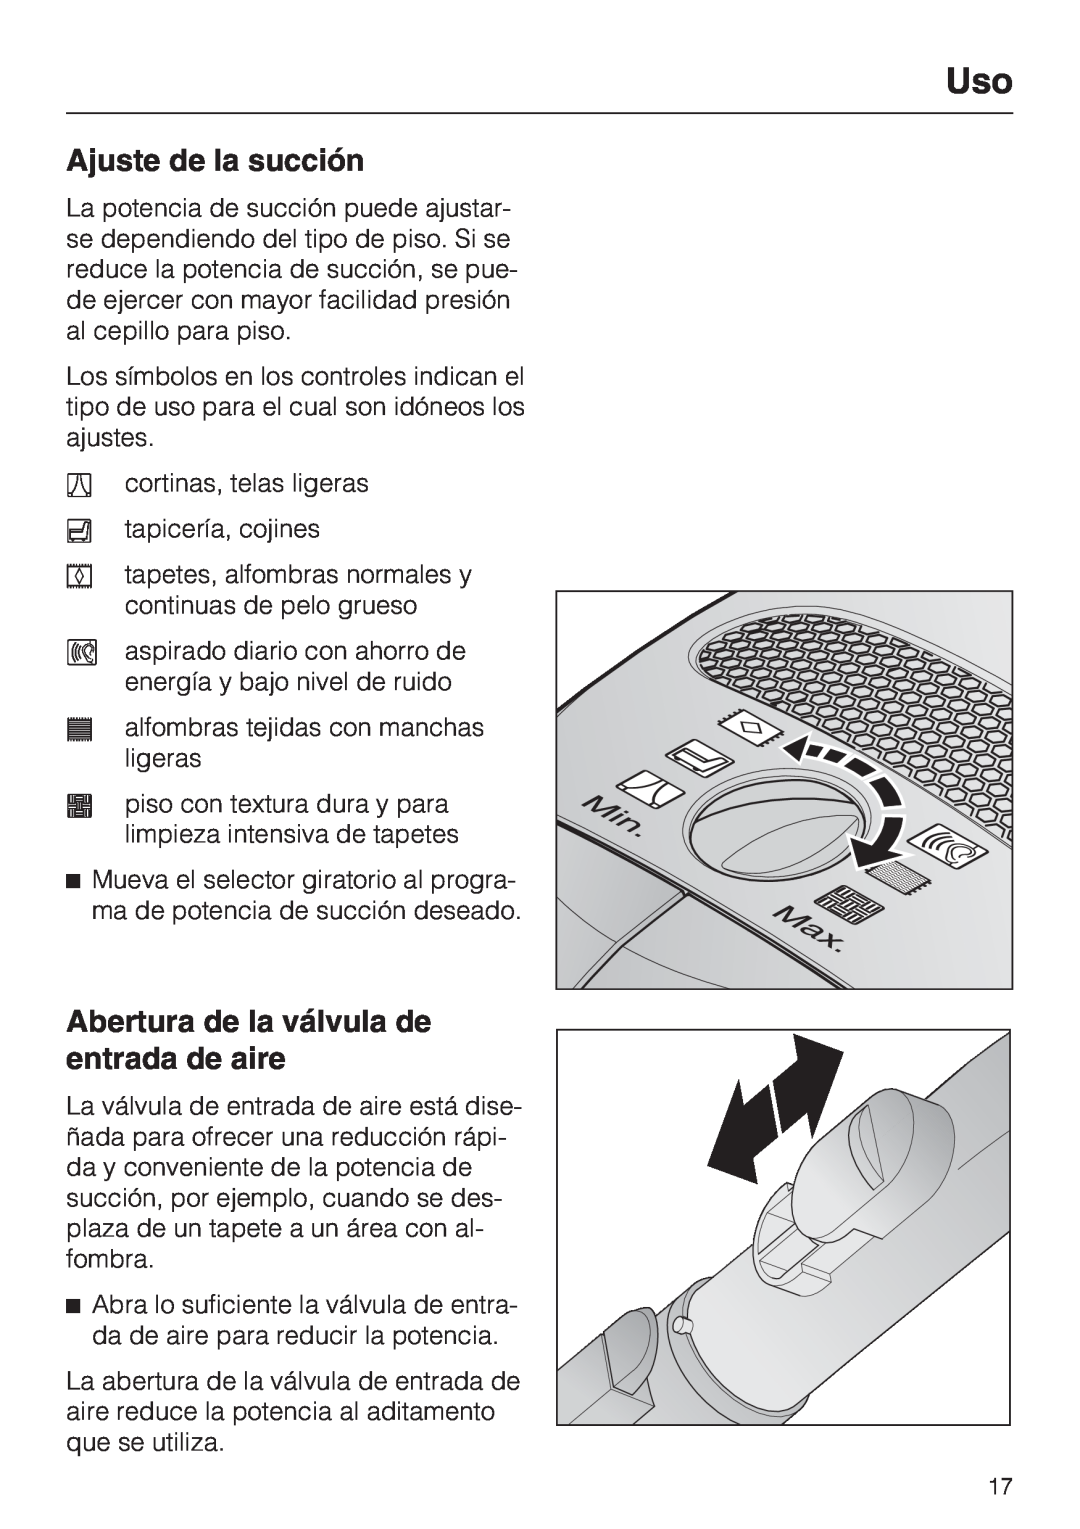 Miele S 2000 operating instructions Ajuste de la succión, Abertura de la válvula de entrada de aire 